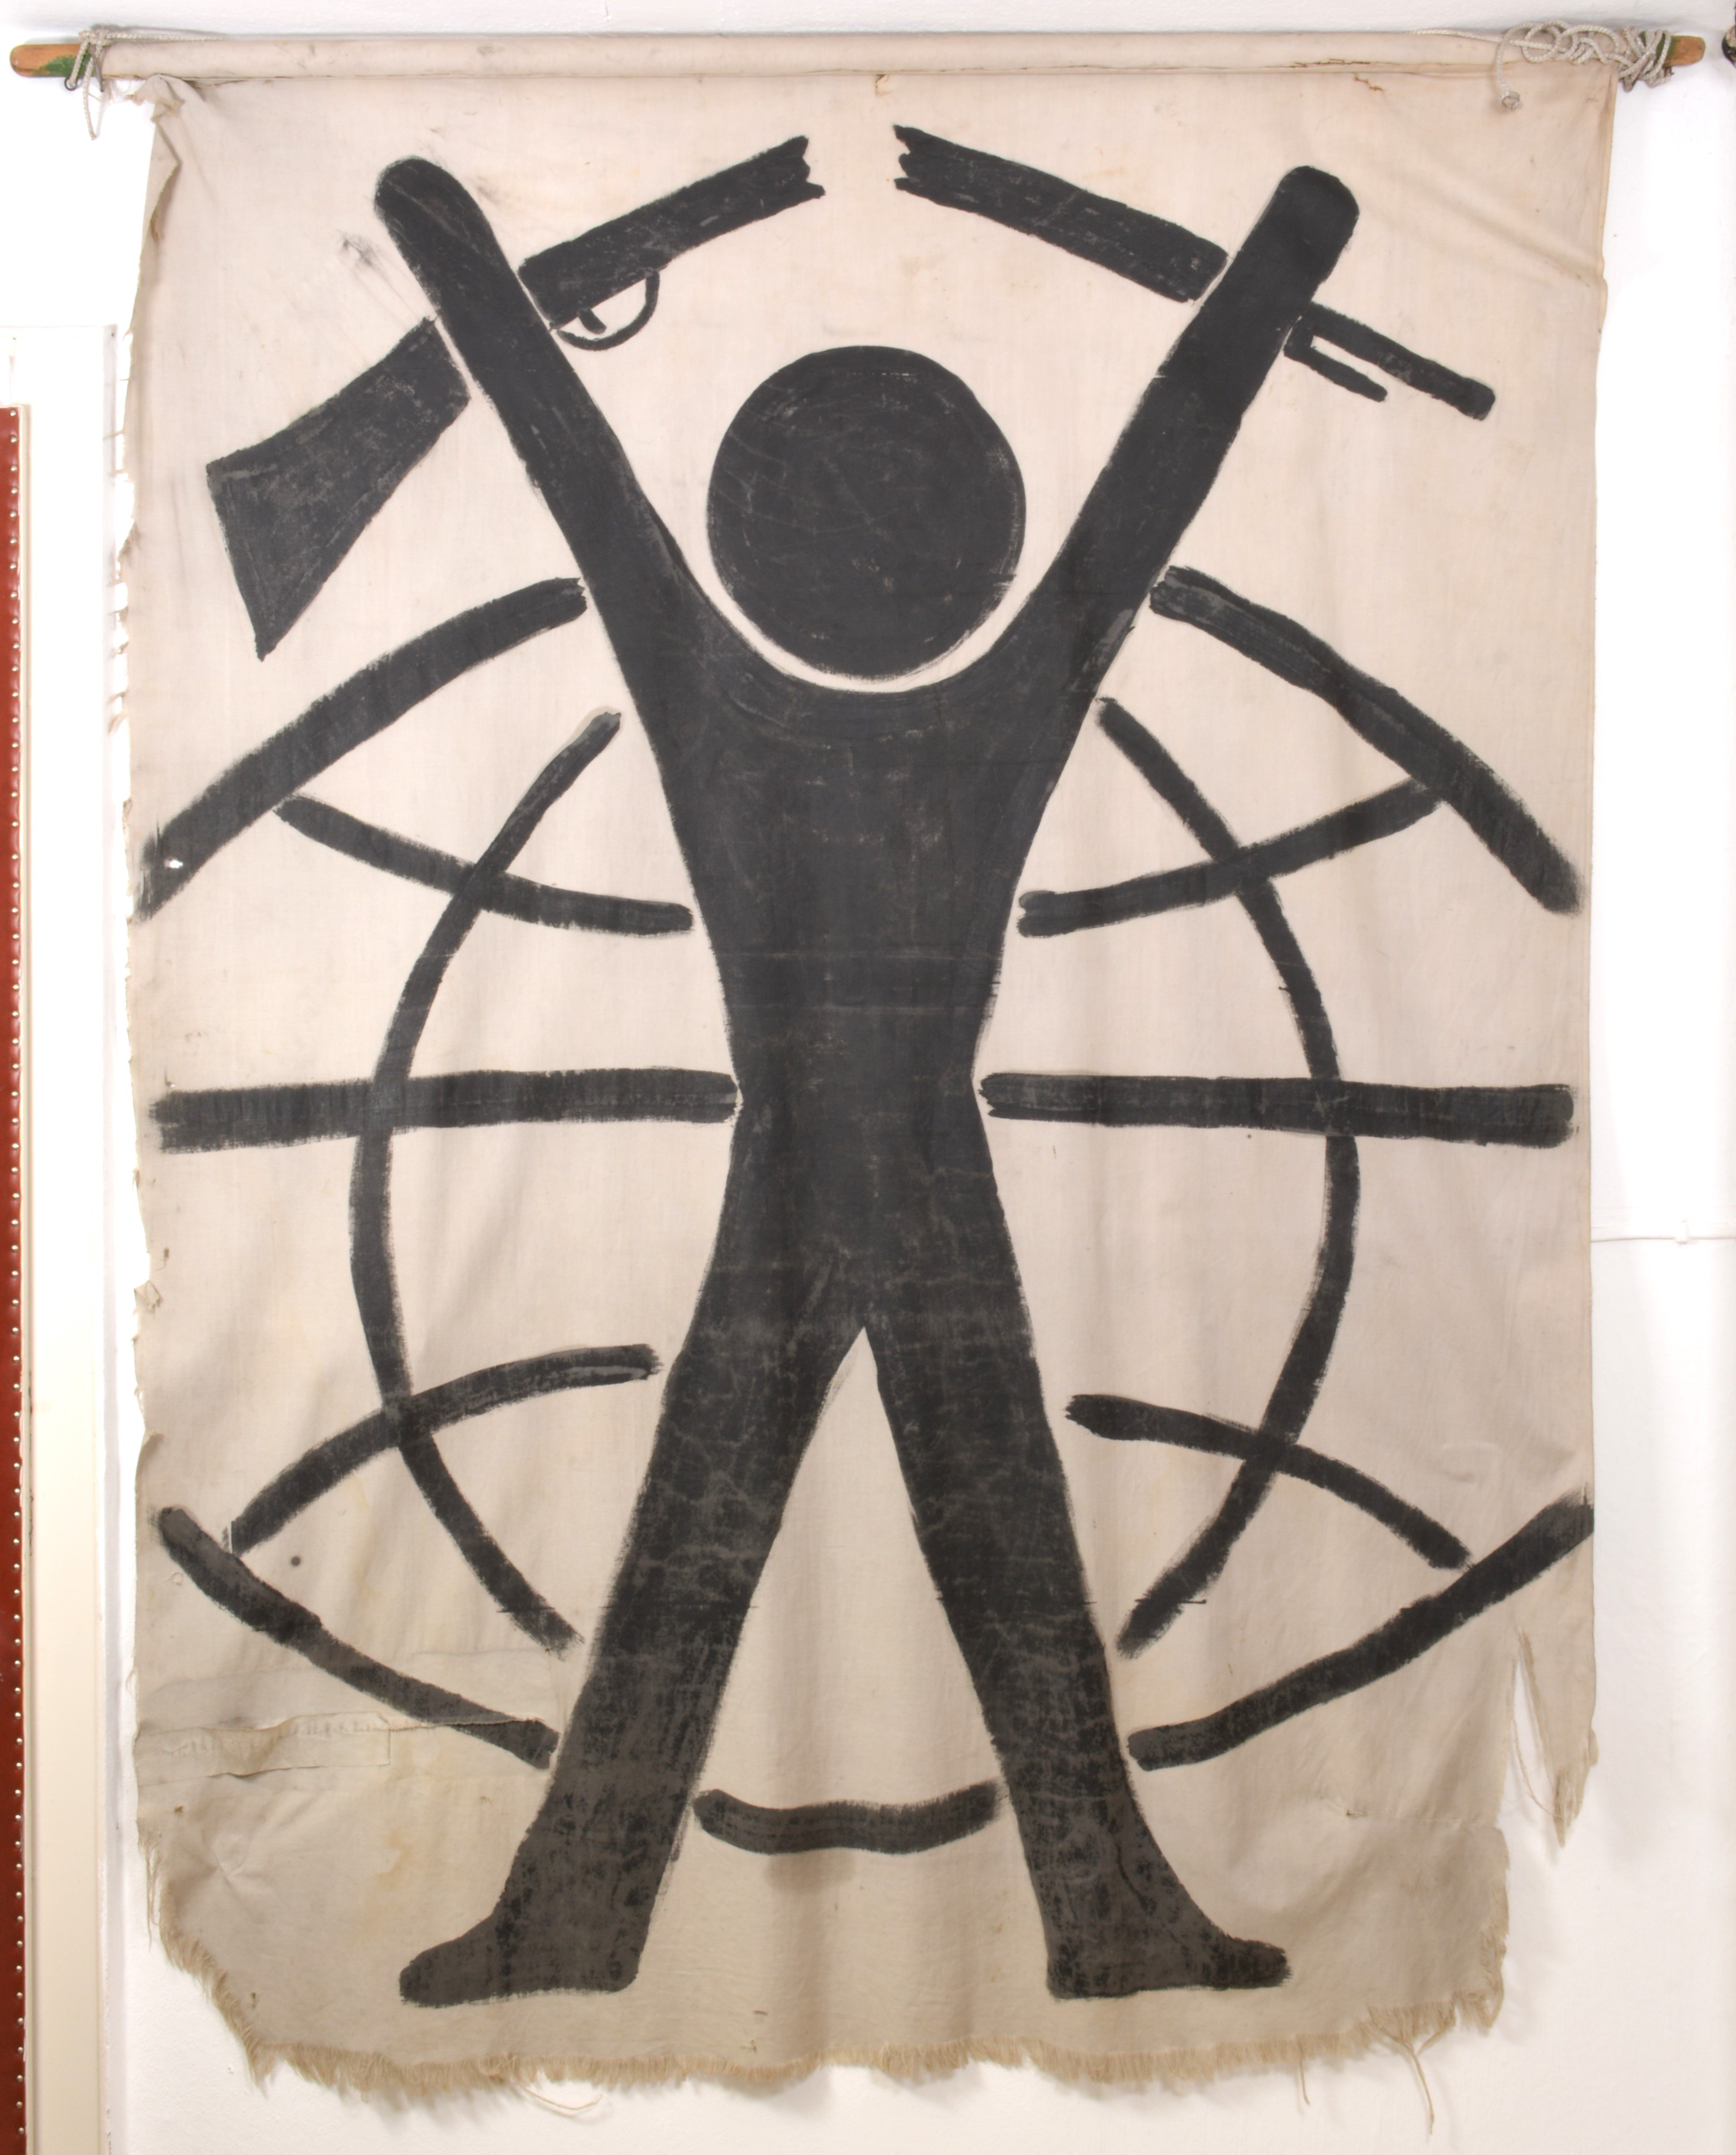 Transparent: Mann vor Weltkugel mit zerbrochenem Gewehr (DDR Geschichtsmuseum im Dokumentationszentrum Perleberg CC BY-SA)